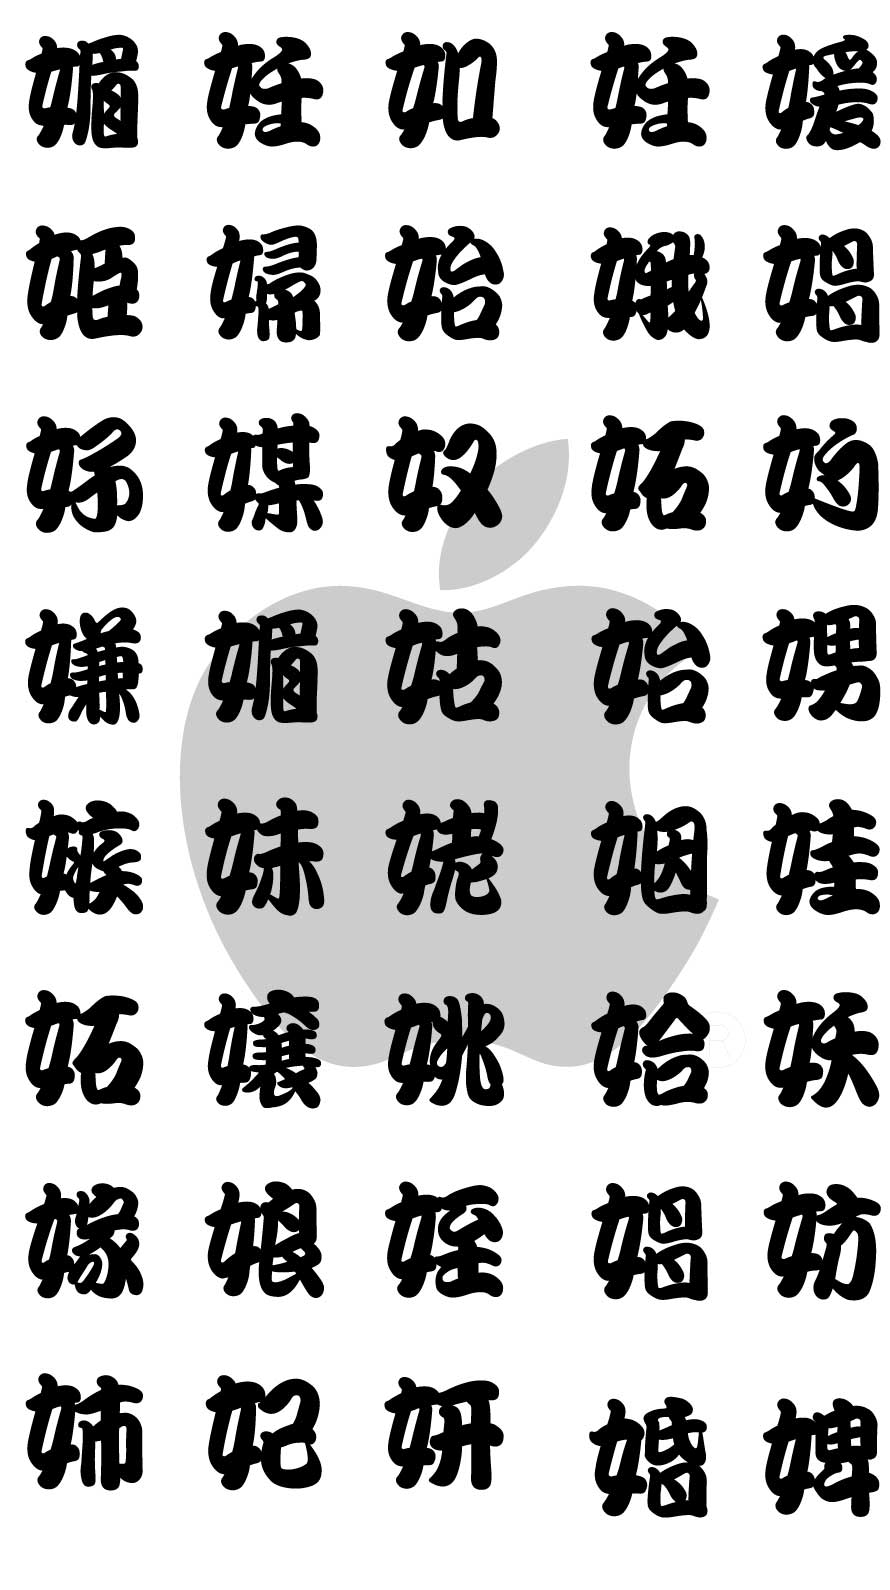 エロ注意 超恥ずかしいジョーク壁紙 魚漢字湯のみ風の隠語漢字の待ち画面 Iphone Android対応 Laboホンテン